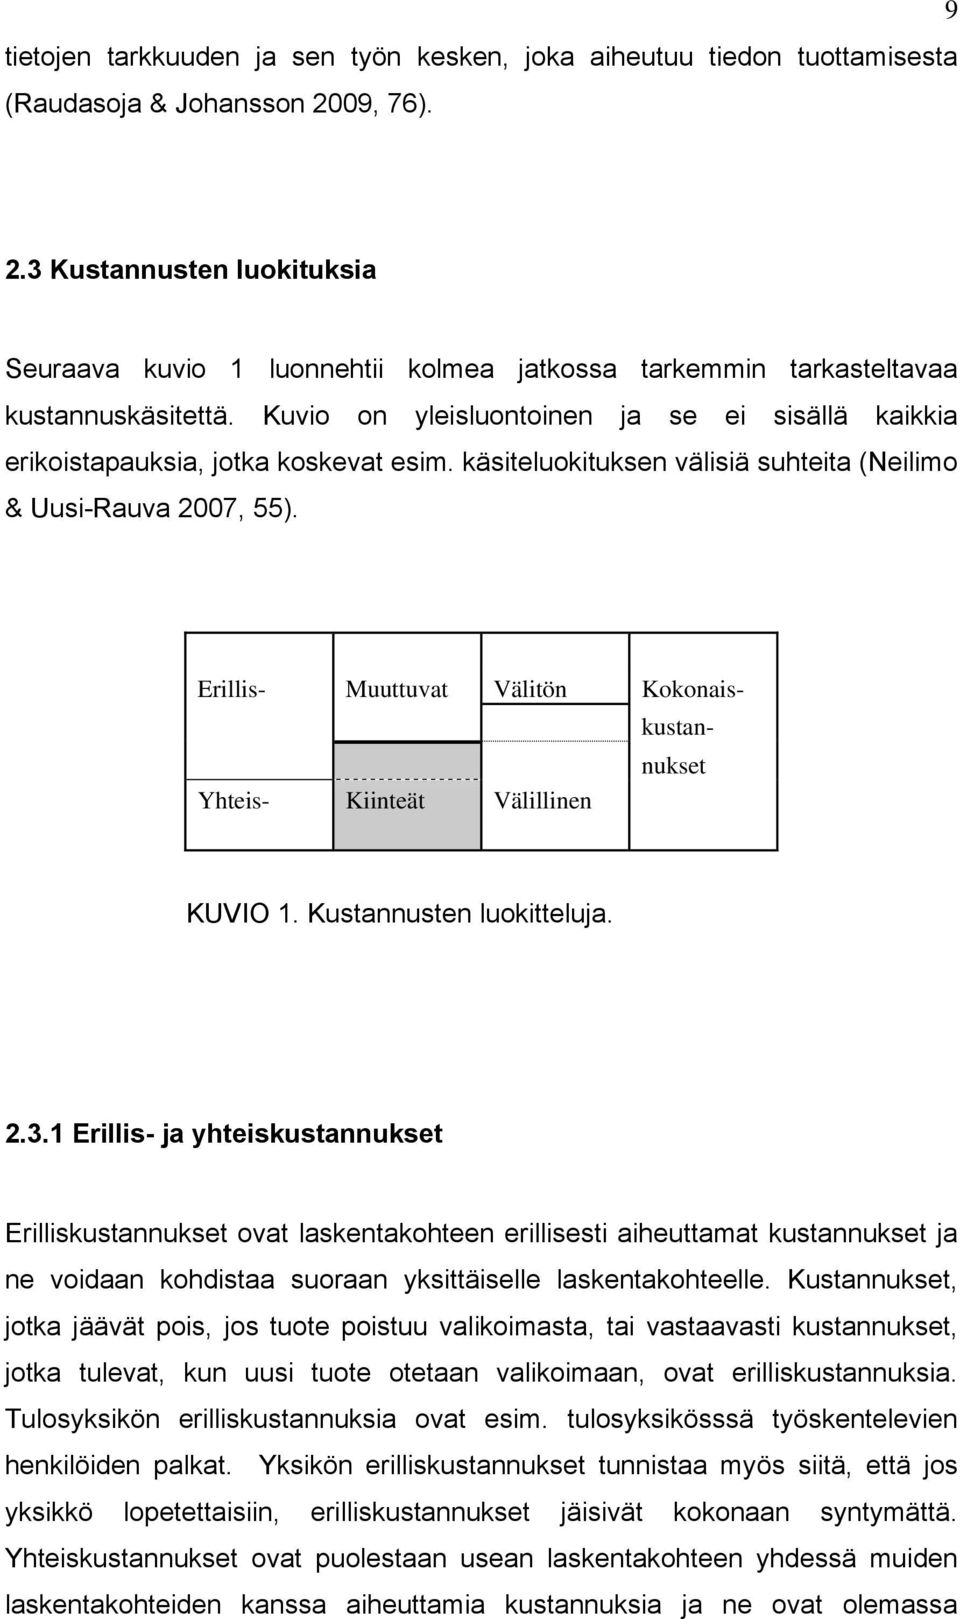 Kuvio on yleisluontoinen ja se ei sisällä kaikkia erikoistapauksia, jotka koskevat esim. käsiteluokituksen välisiä suhteita (Neilimo & Uusi-Rauva 2007, 55).